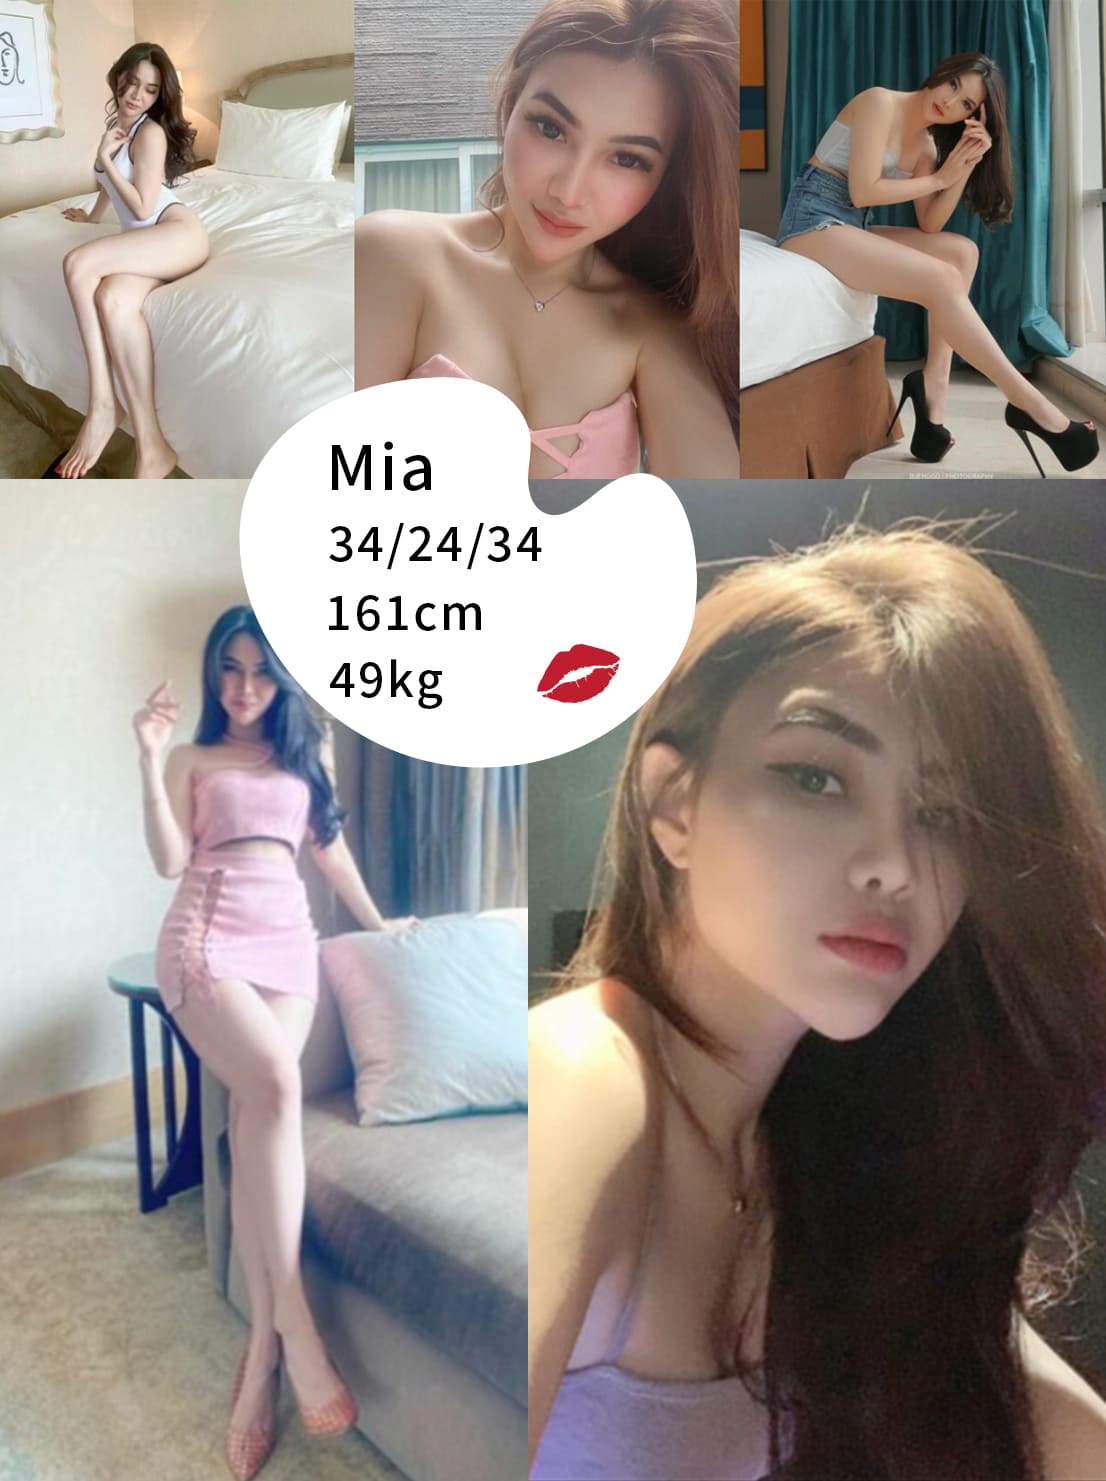 mia kissb2b vietnam model